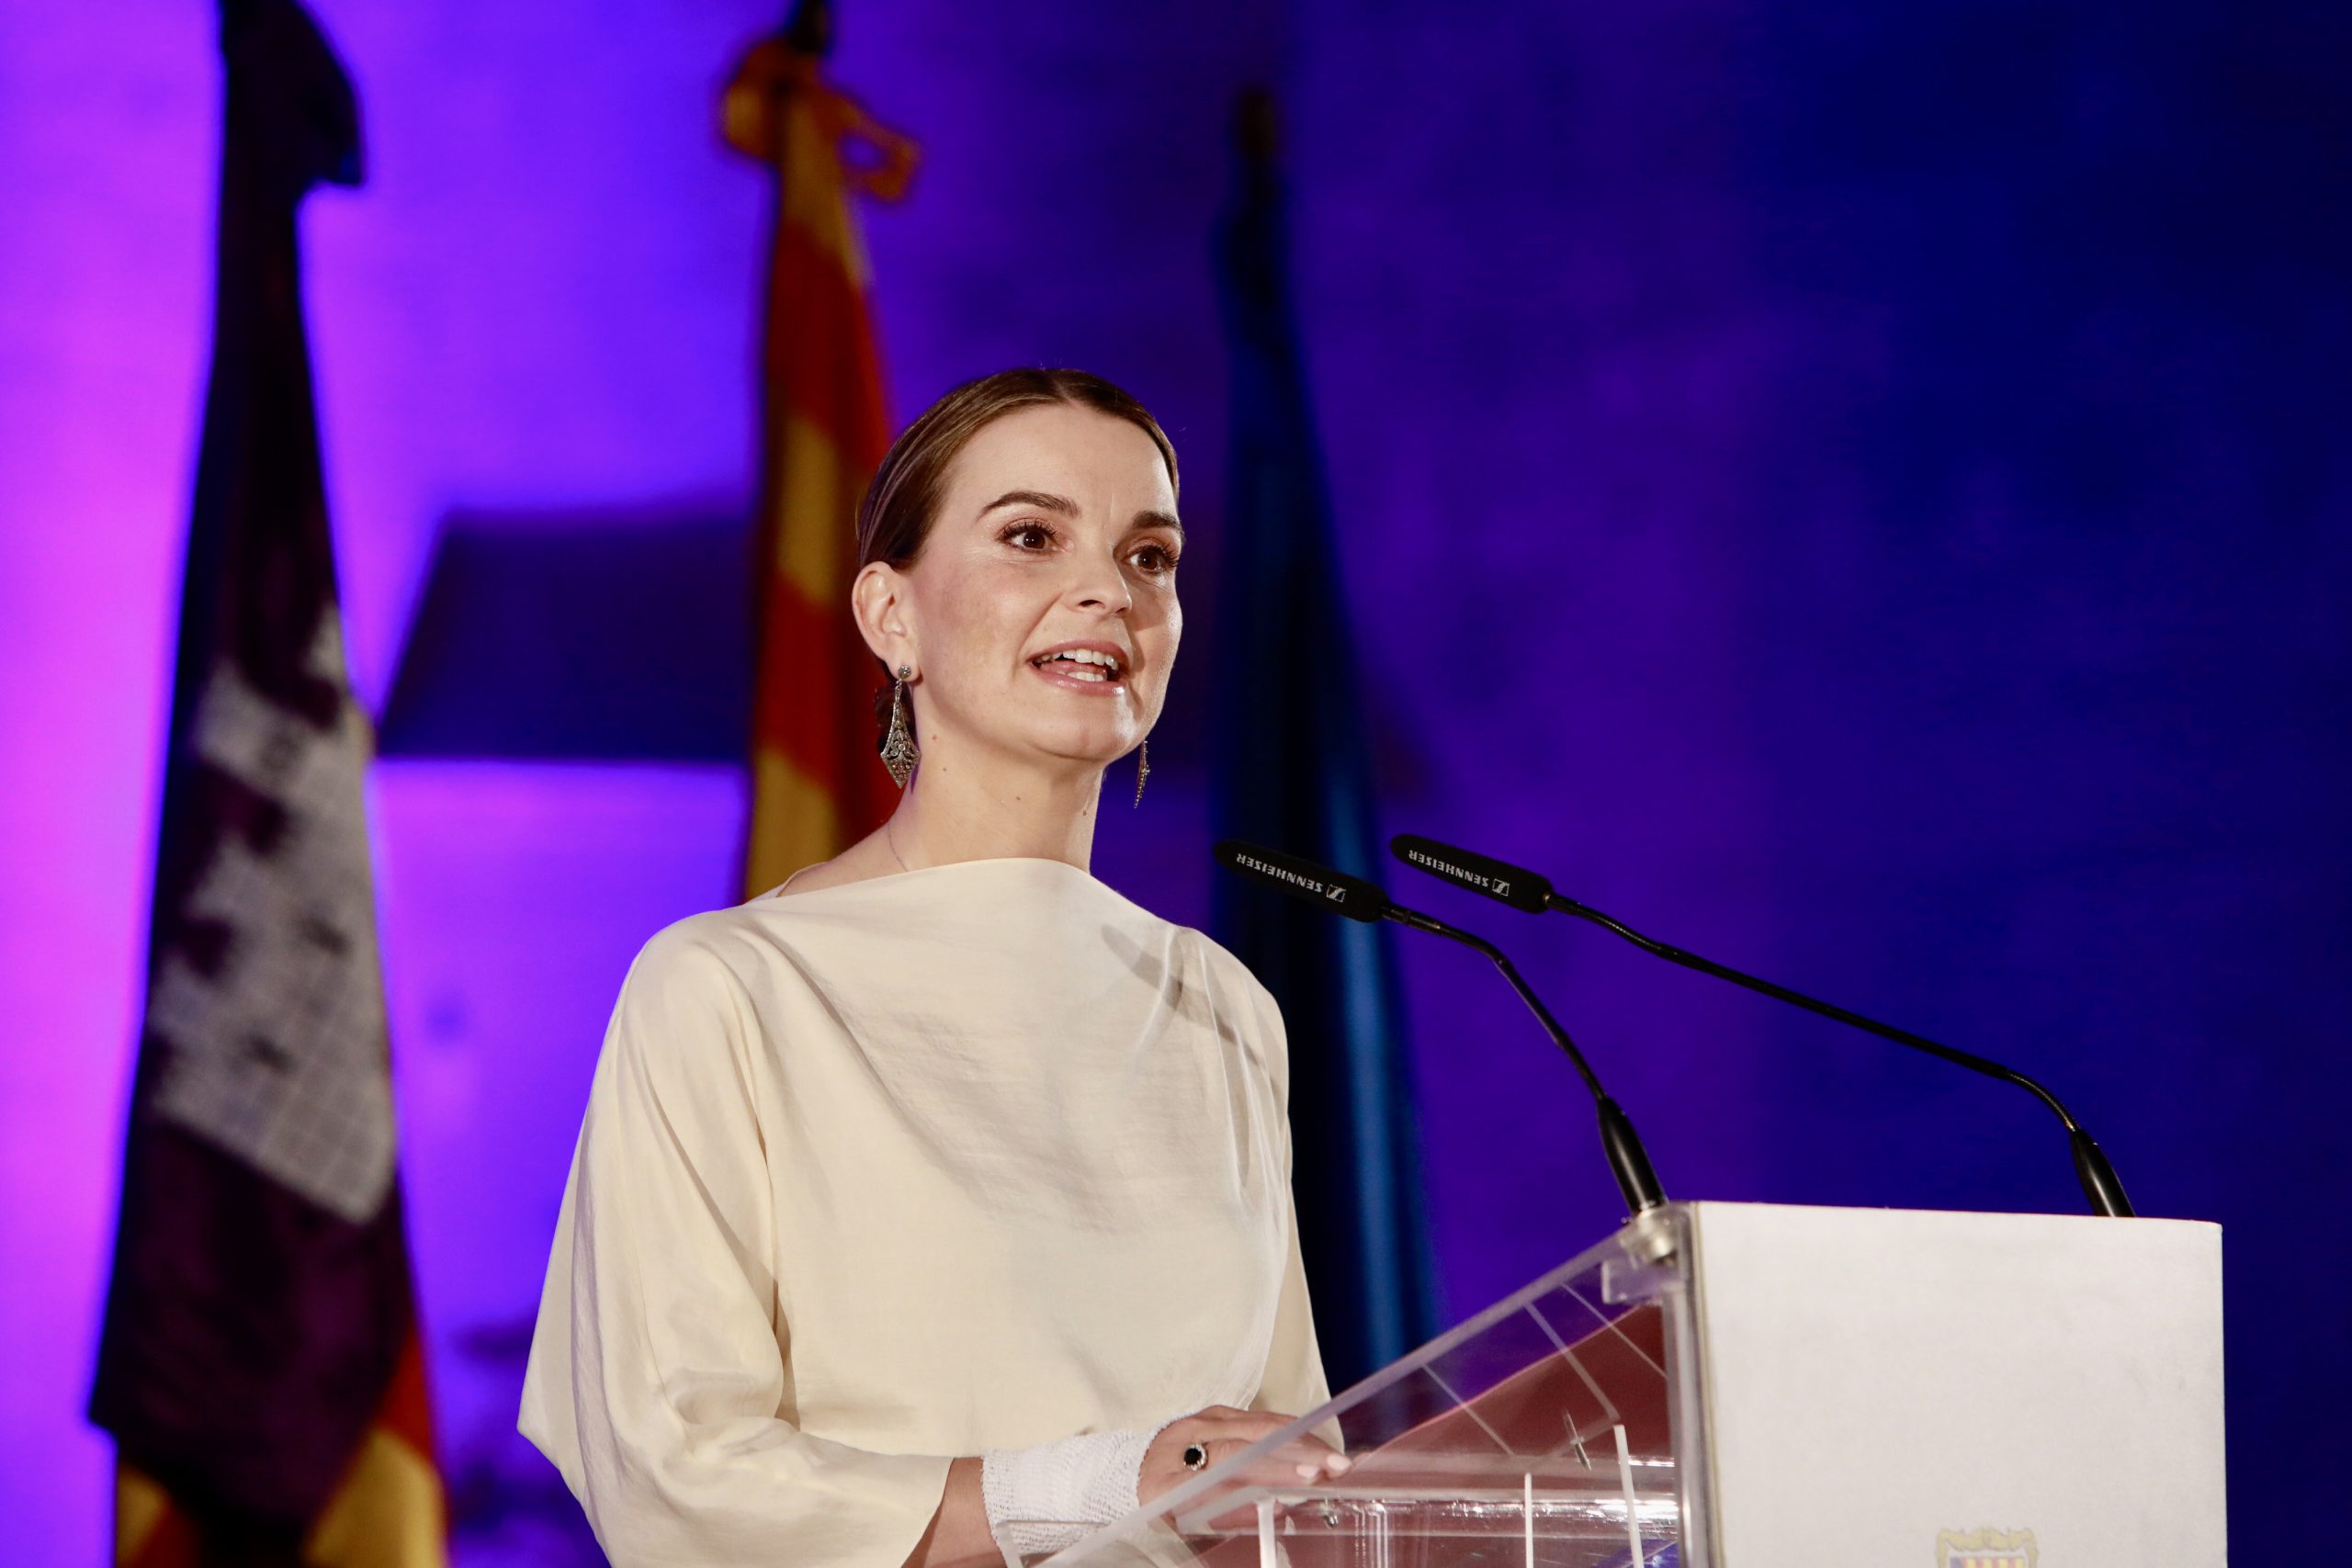 Marga Prohens ja és presidenta: "Crec que la insularitat és un fet a compensar”